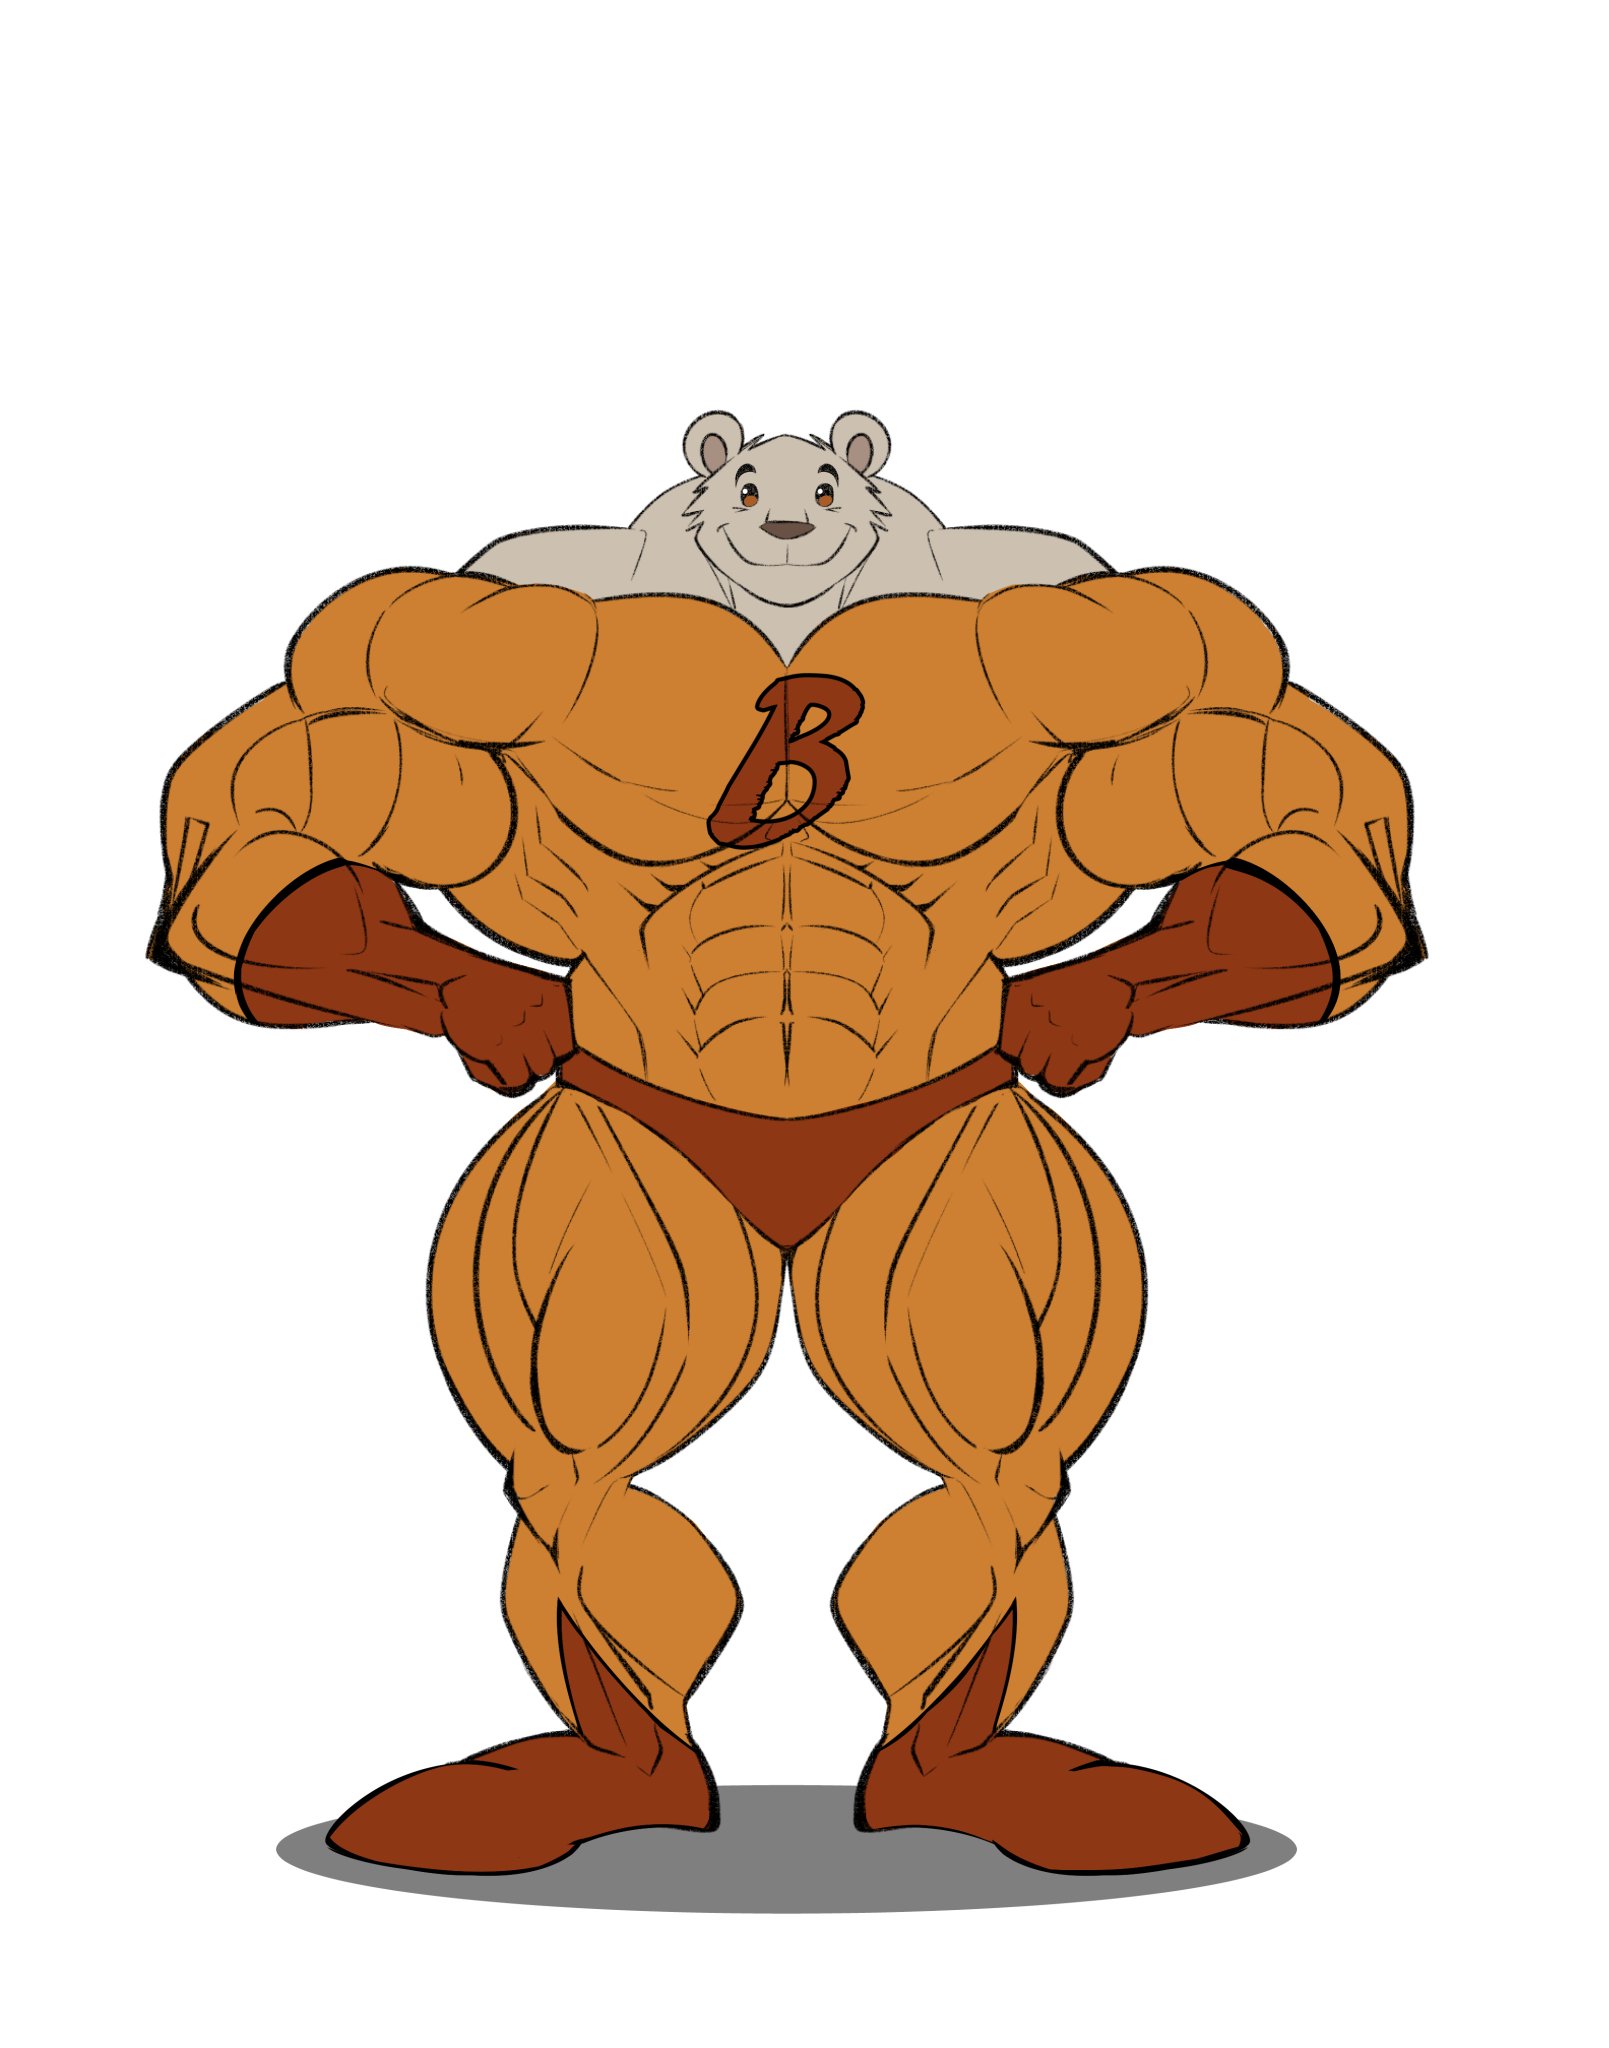 boulder muscle cartoon